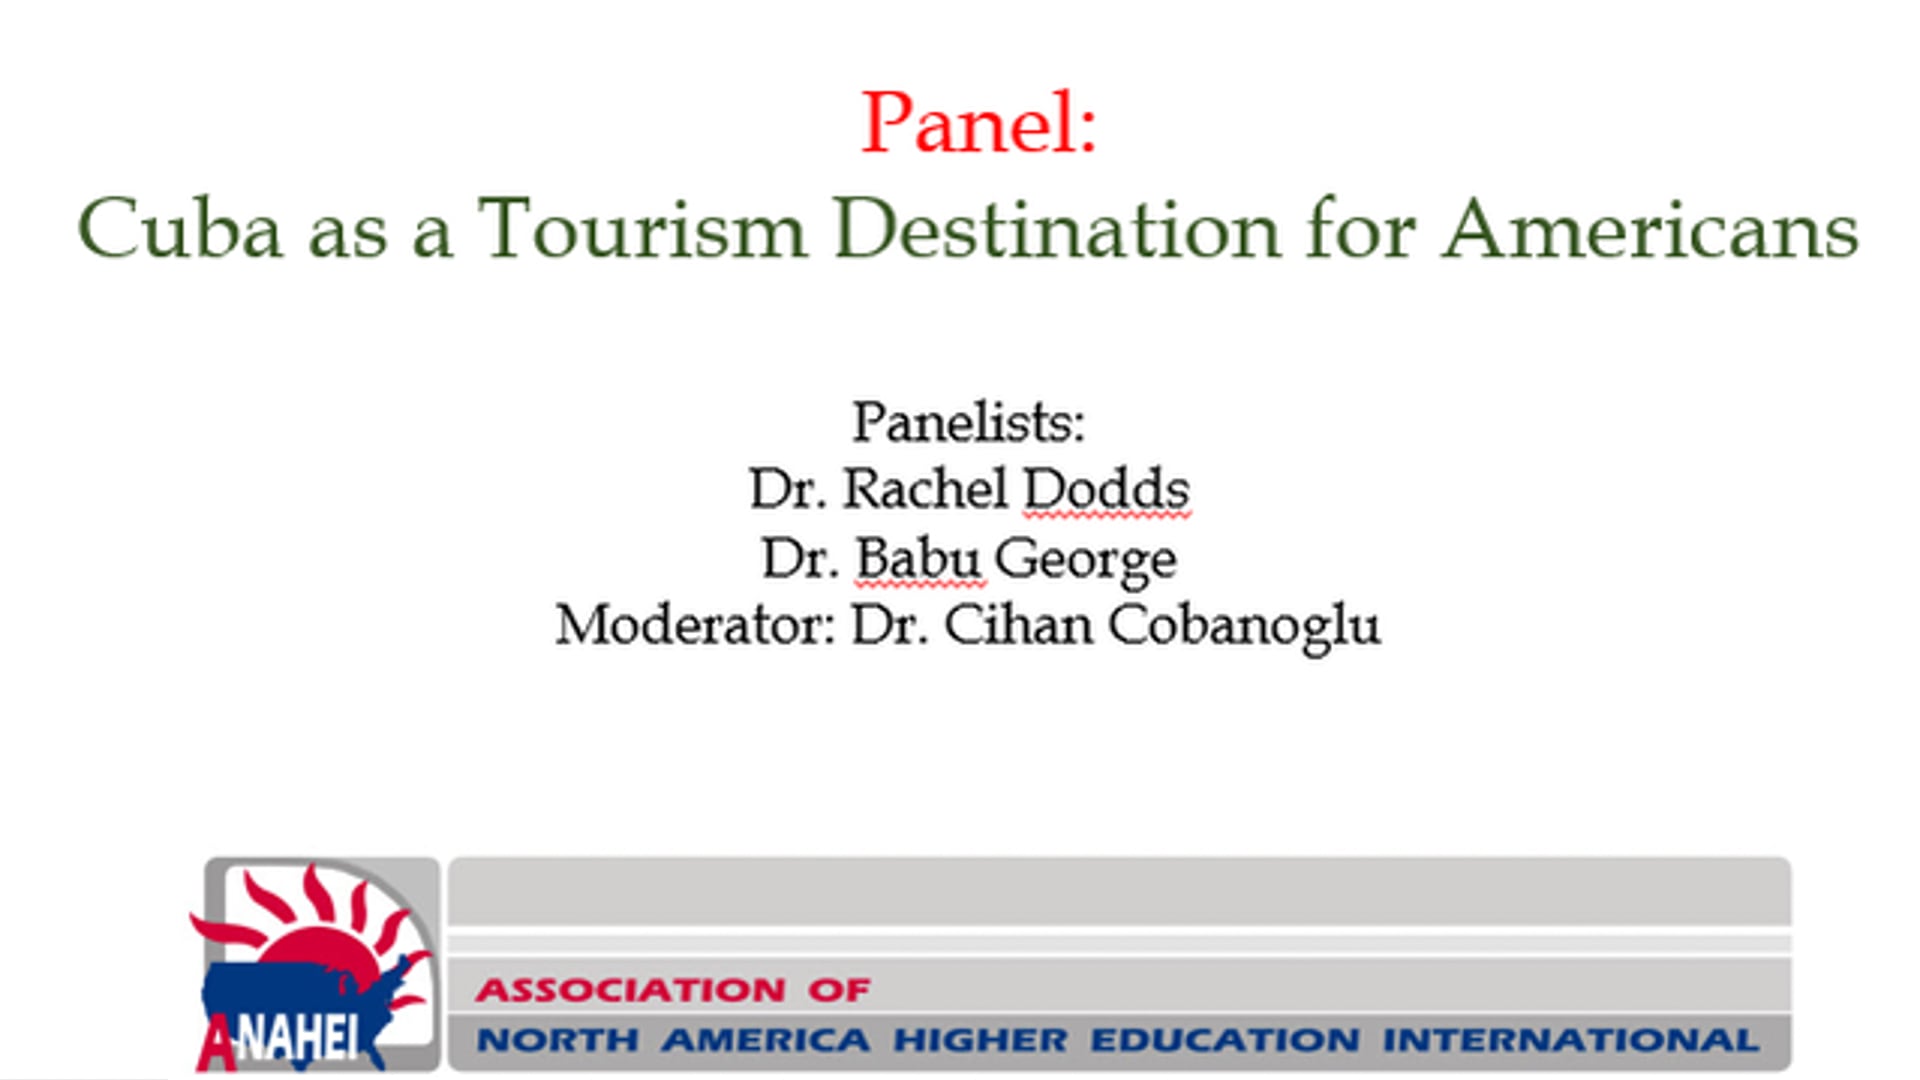 Panel: Cuba as a Tourism Destination for Americans